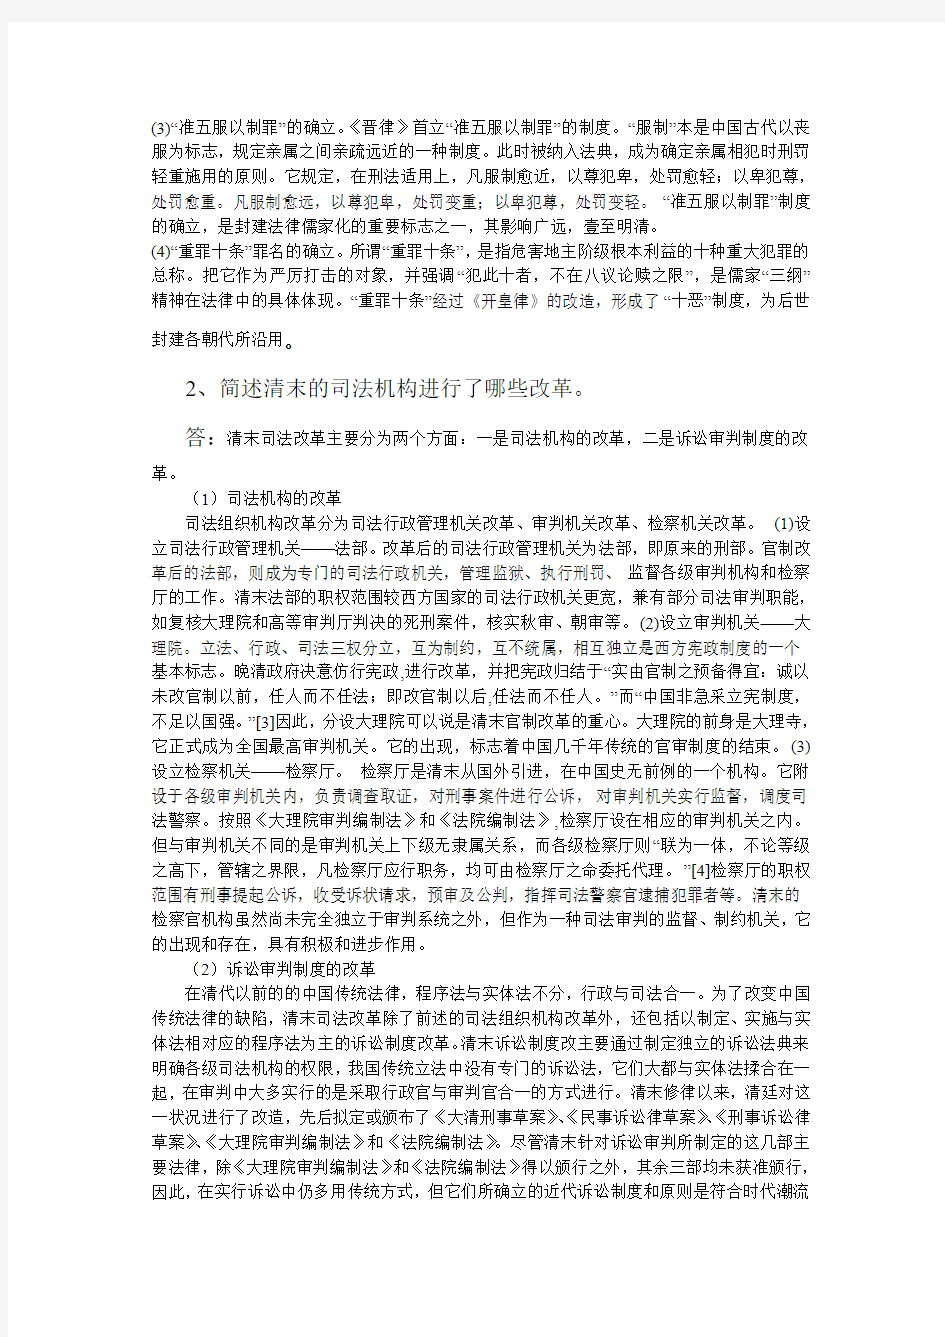 北航13年12月课程考试《中国法制史》考核要求答卷